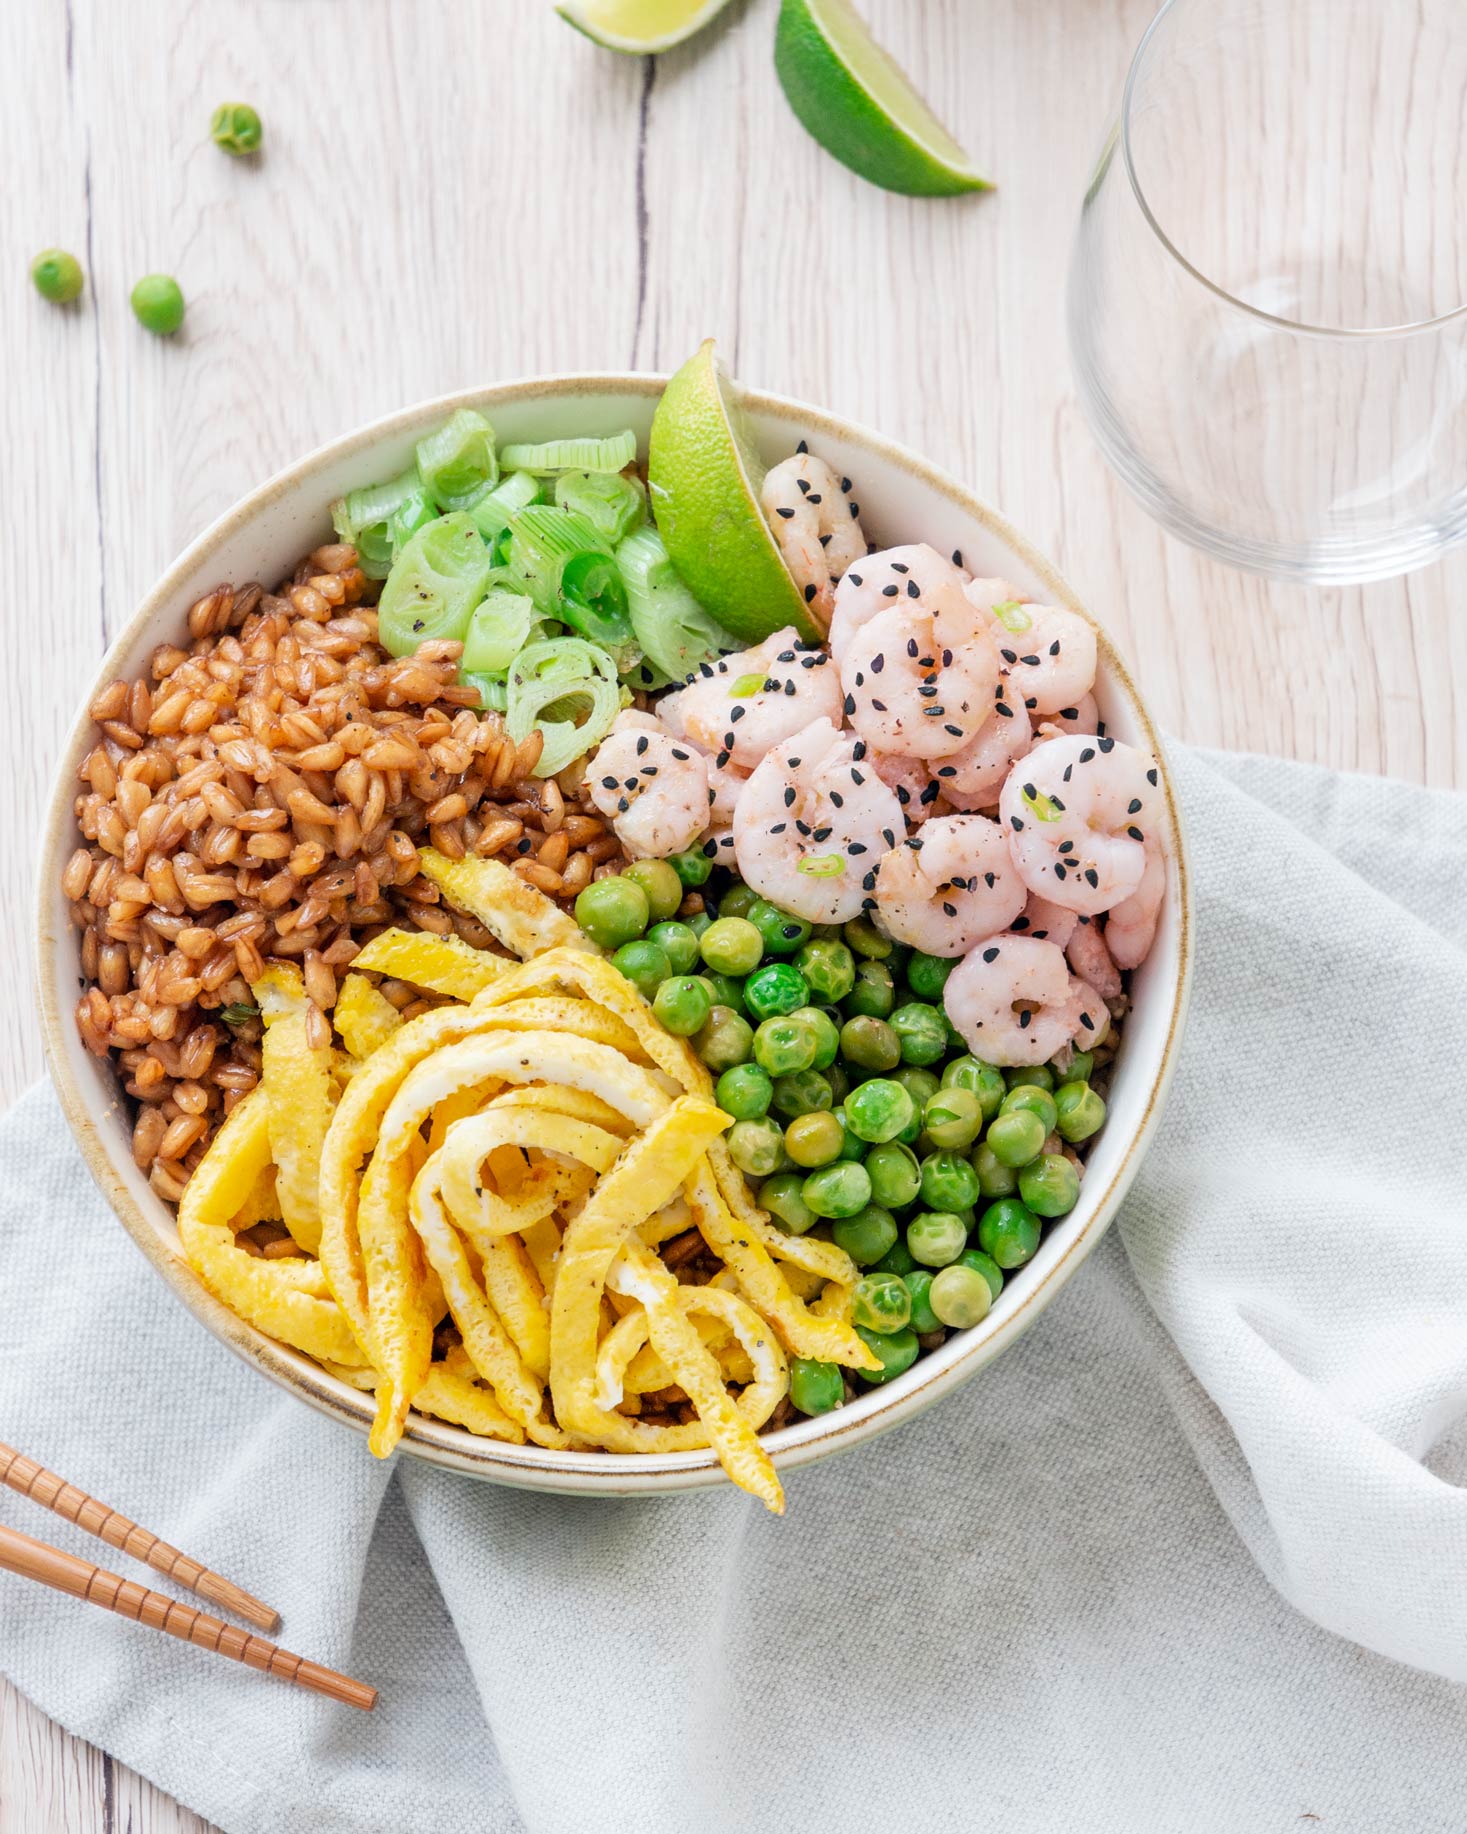 Pokè bowl arcobaleno: i colori che accendono il piacere di mangiare